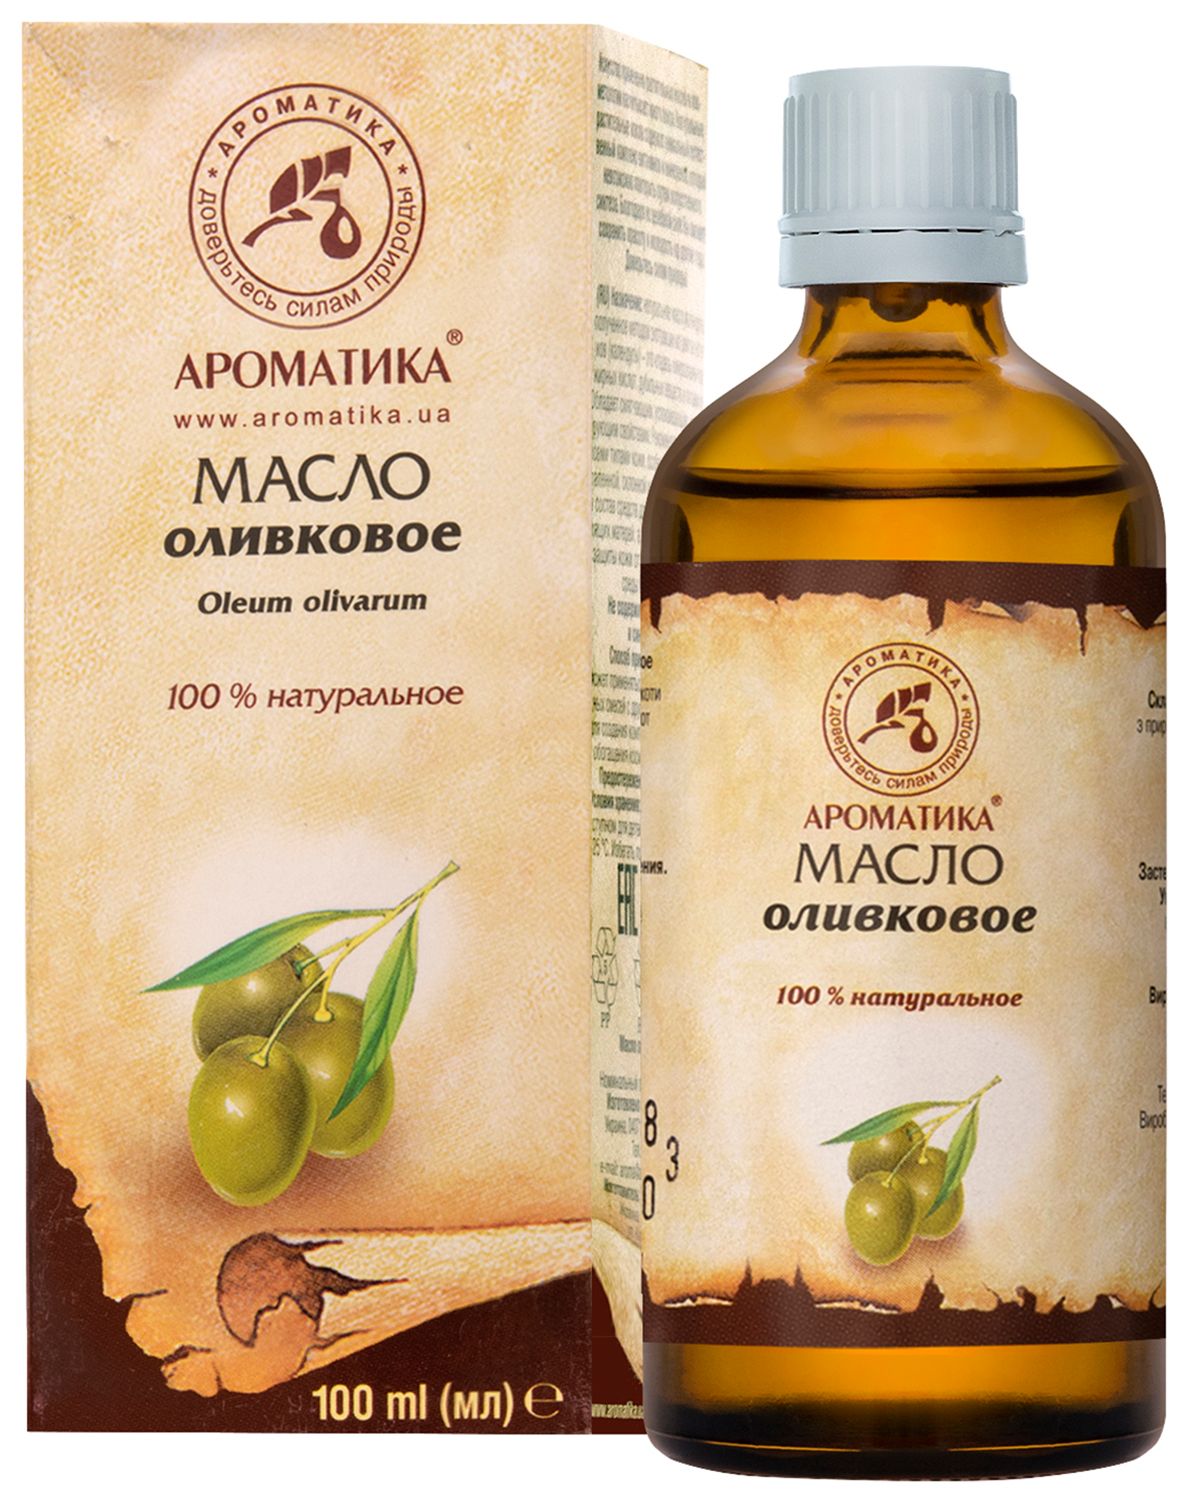 Оливковое масло в народной медицине